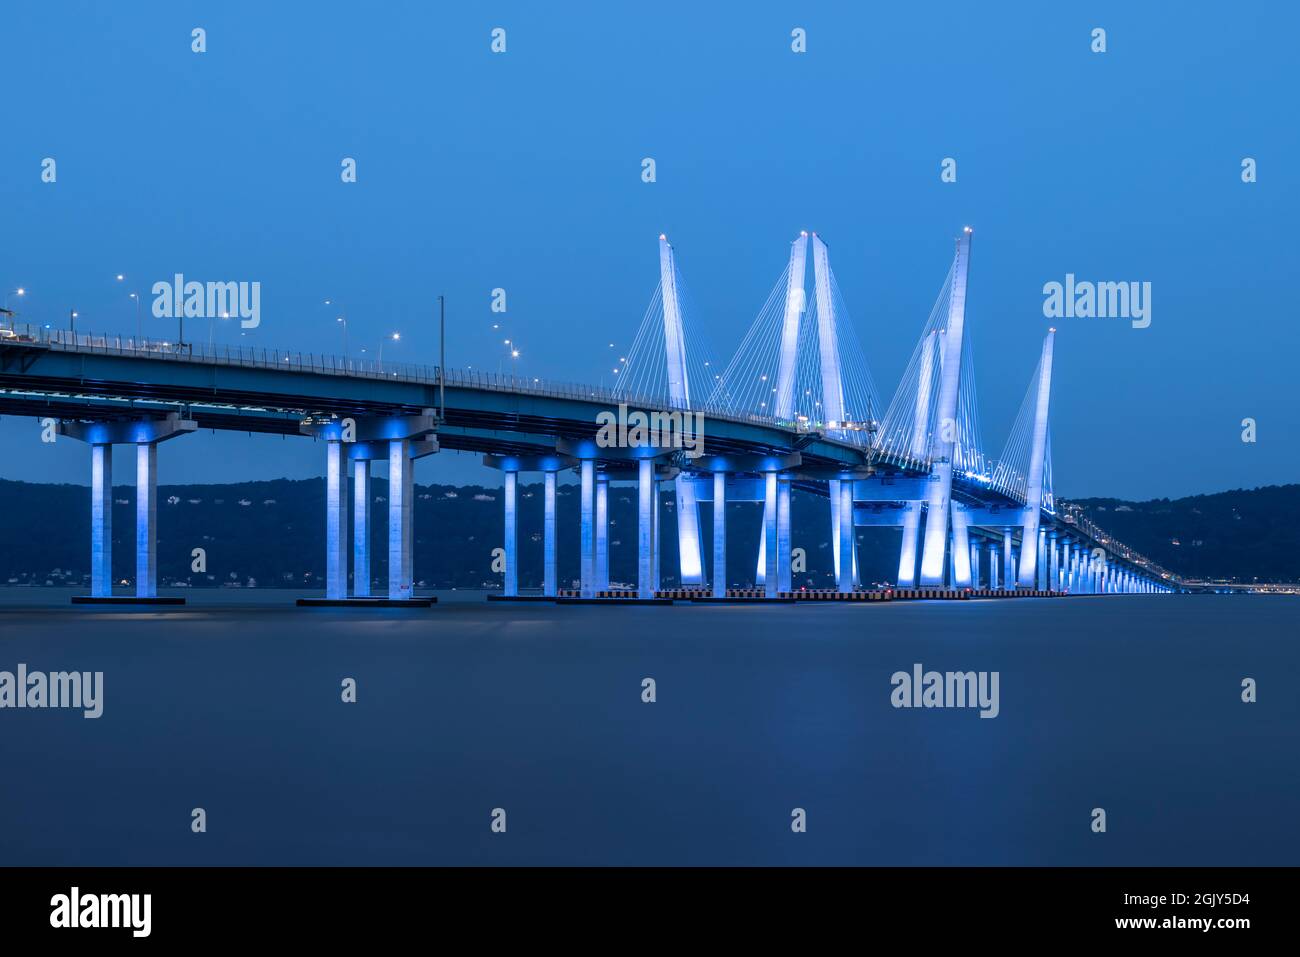 Il Ponte del Governatore Mario M. Cuomo si è illuminato in blu in osservazione del 20° anniversario degli attacchi terroristici del 9/11. Foto Stock